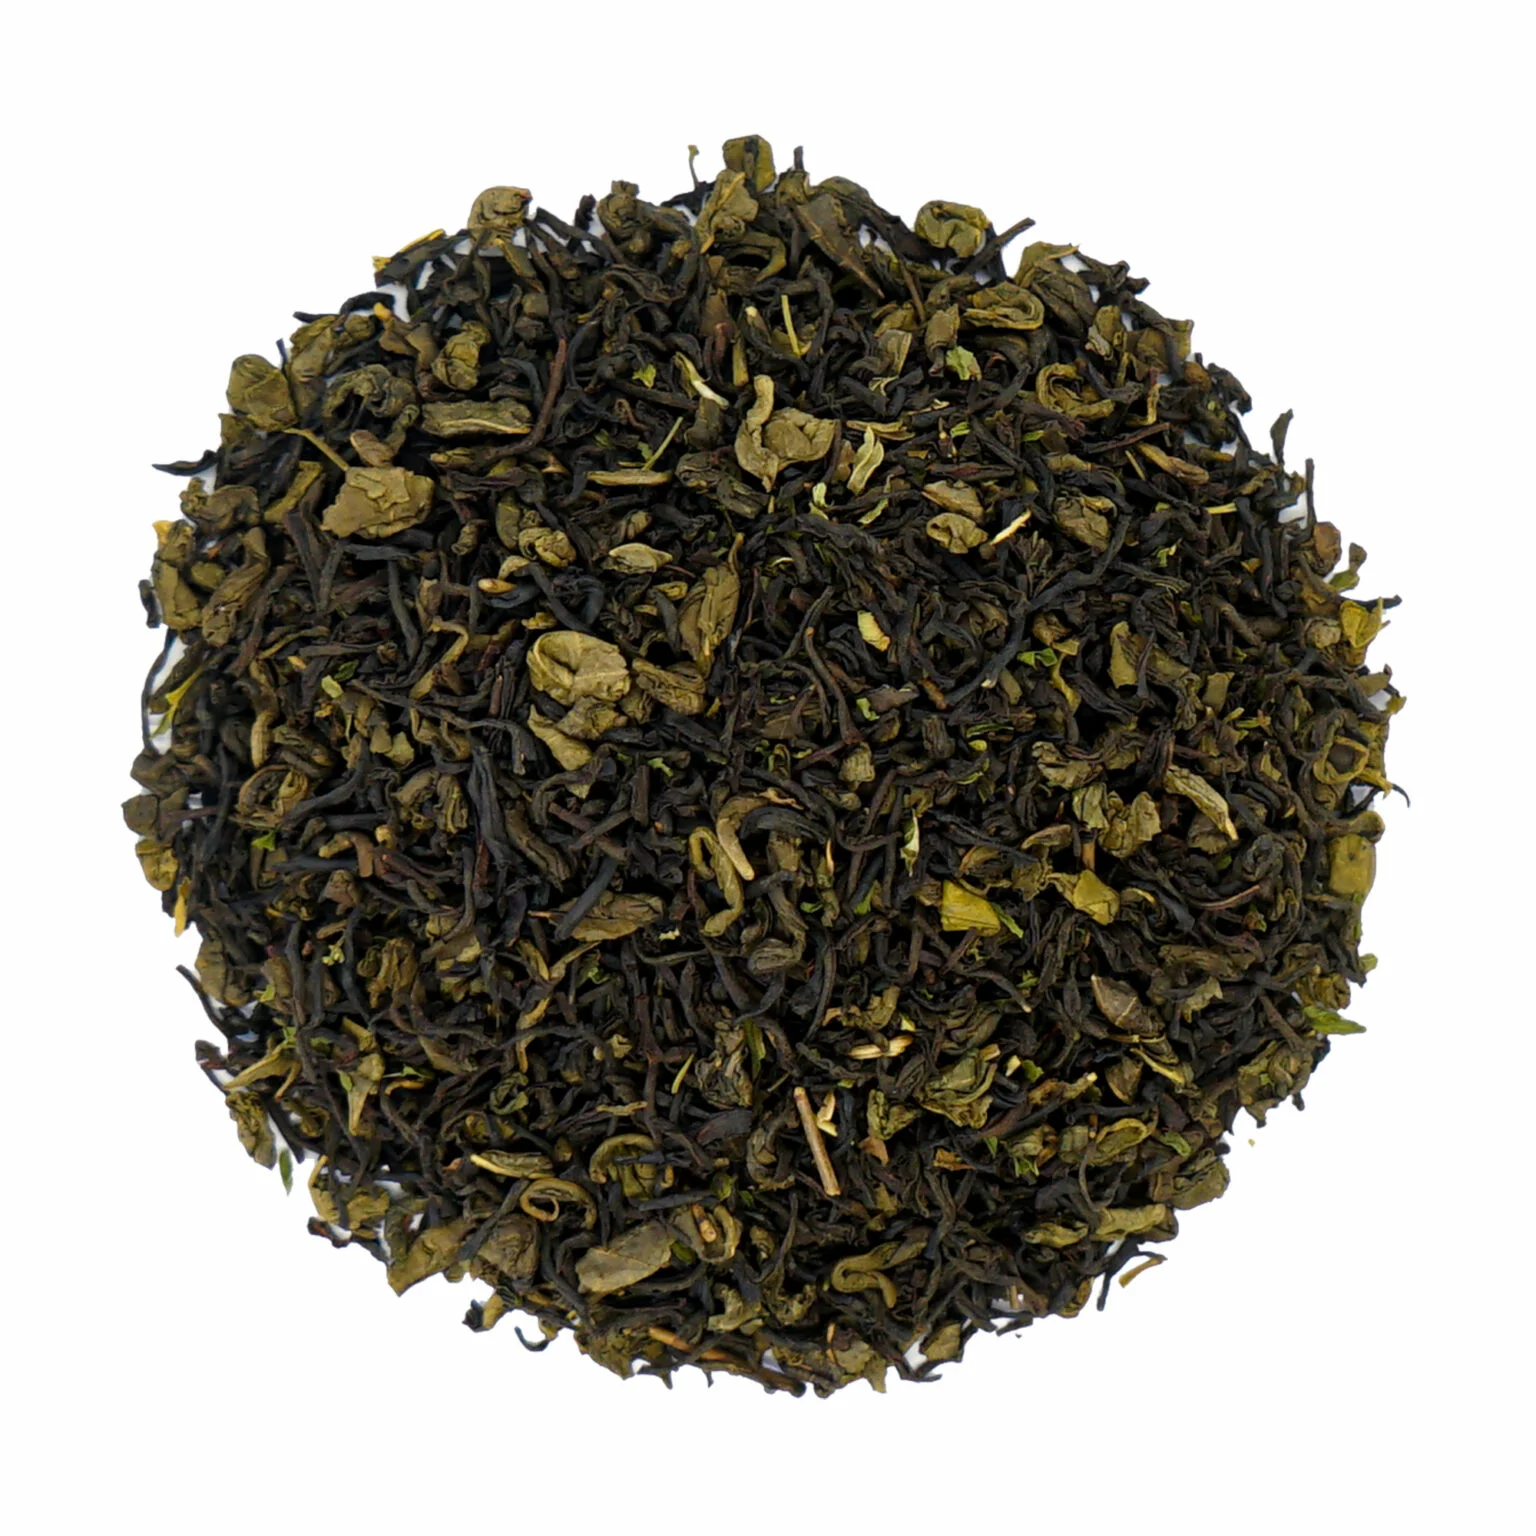 Herbata Zapach Marakeszu: Wyjątkowy smak i aromat